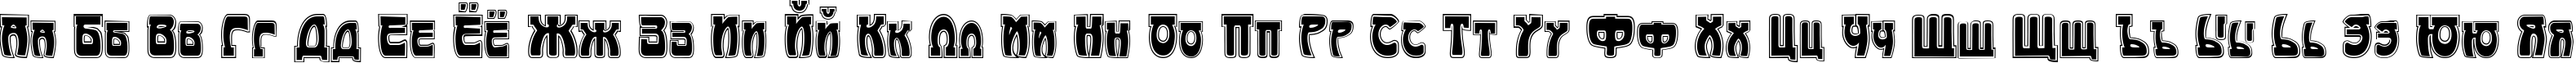 Пример написания русского алфавита шрифтом Art-Nouveau 1895-Contour